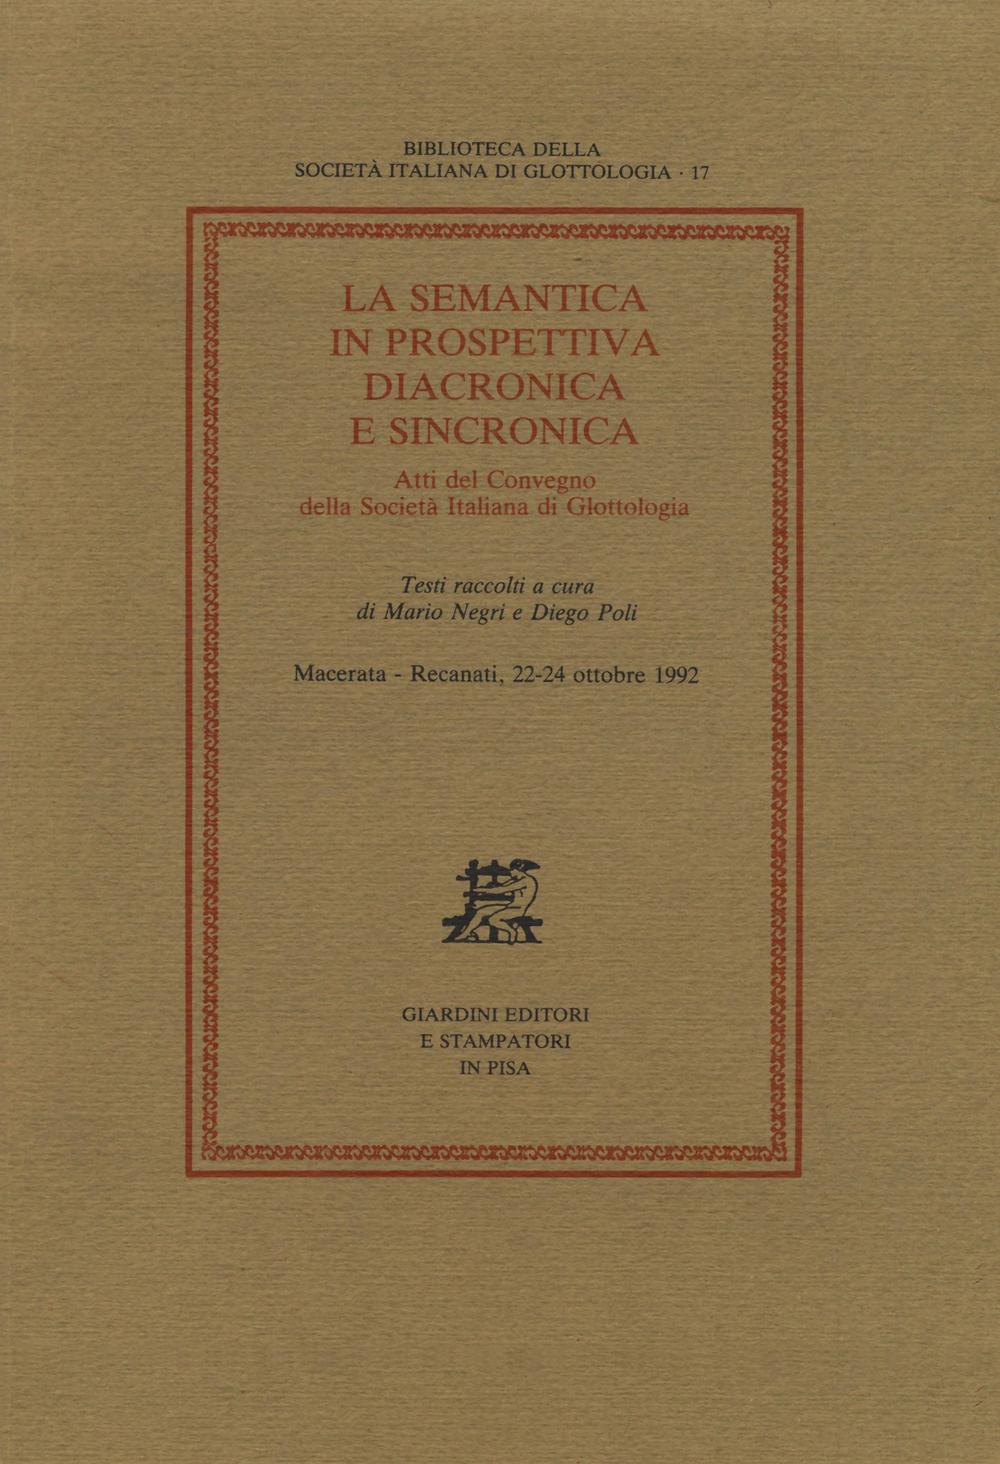 La semantica in prospettiva diacronica e sincronica. Atti del Convegno della Società Italiana di Glottologia (Macerata-Recanati, 22-24 ottobre 1992)